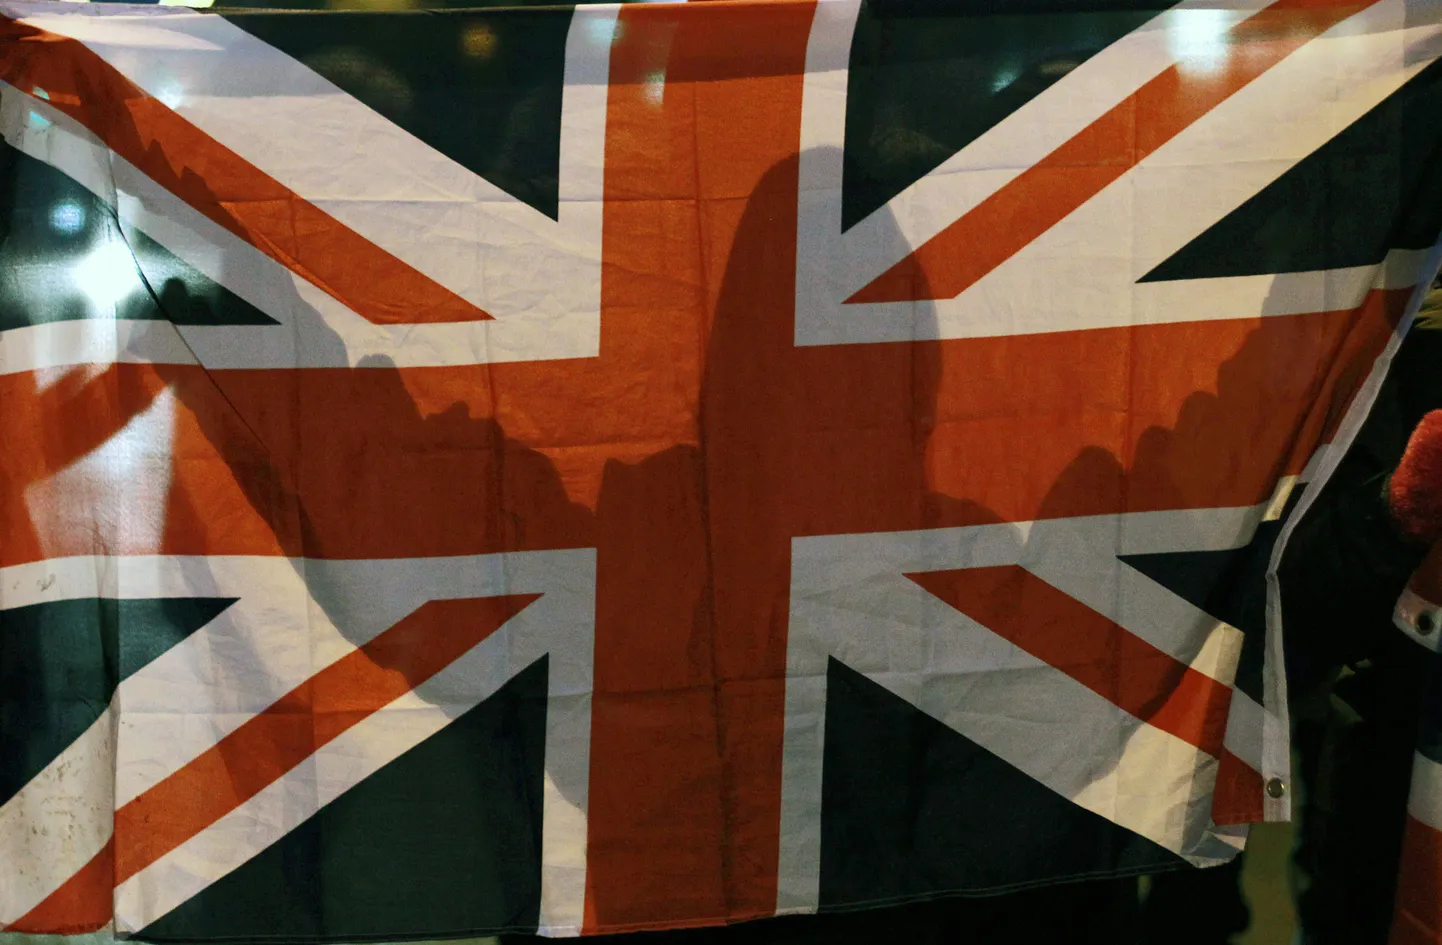 Ühendkuningriigi lipp.